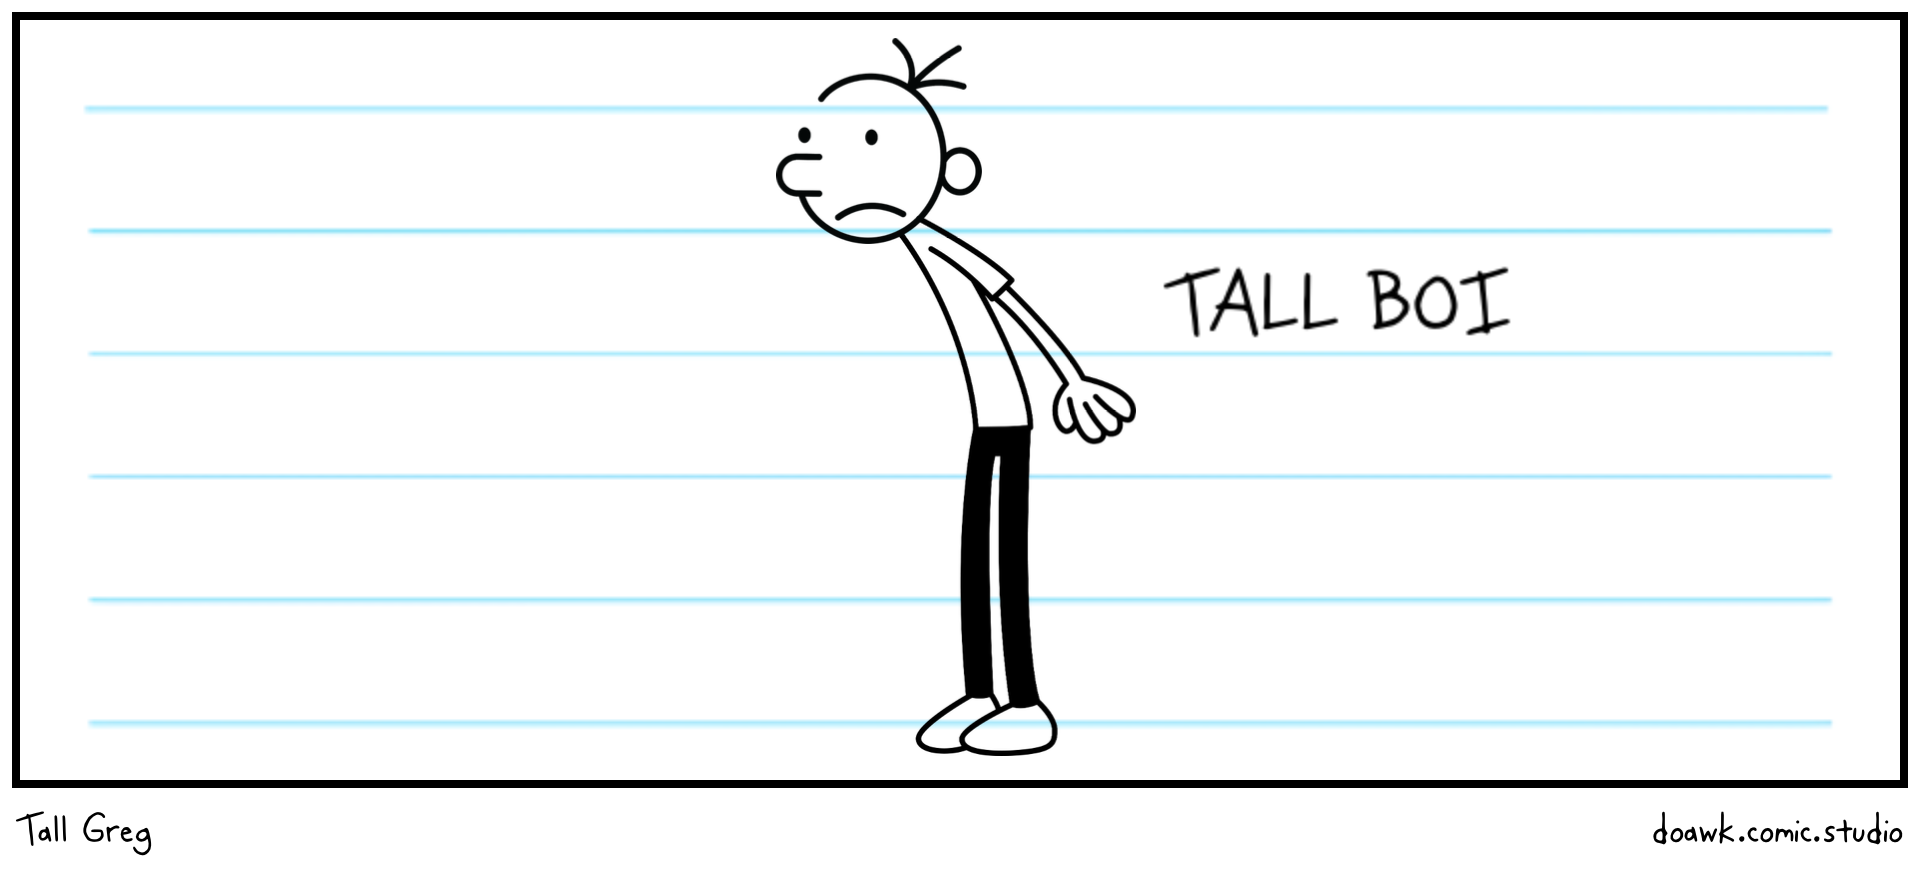 Tall Greg